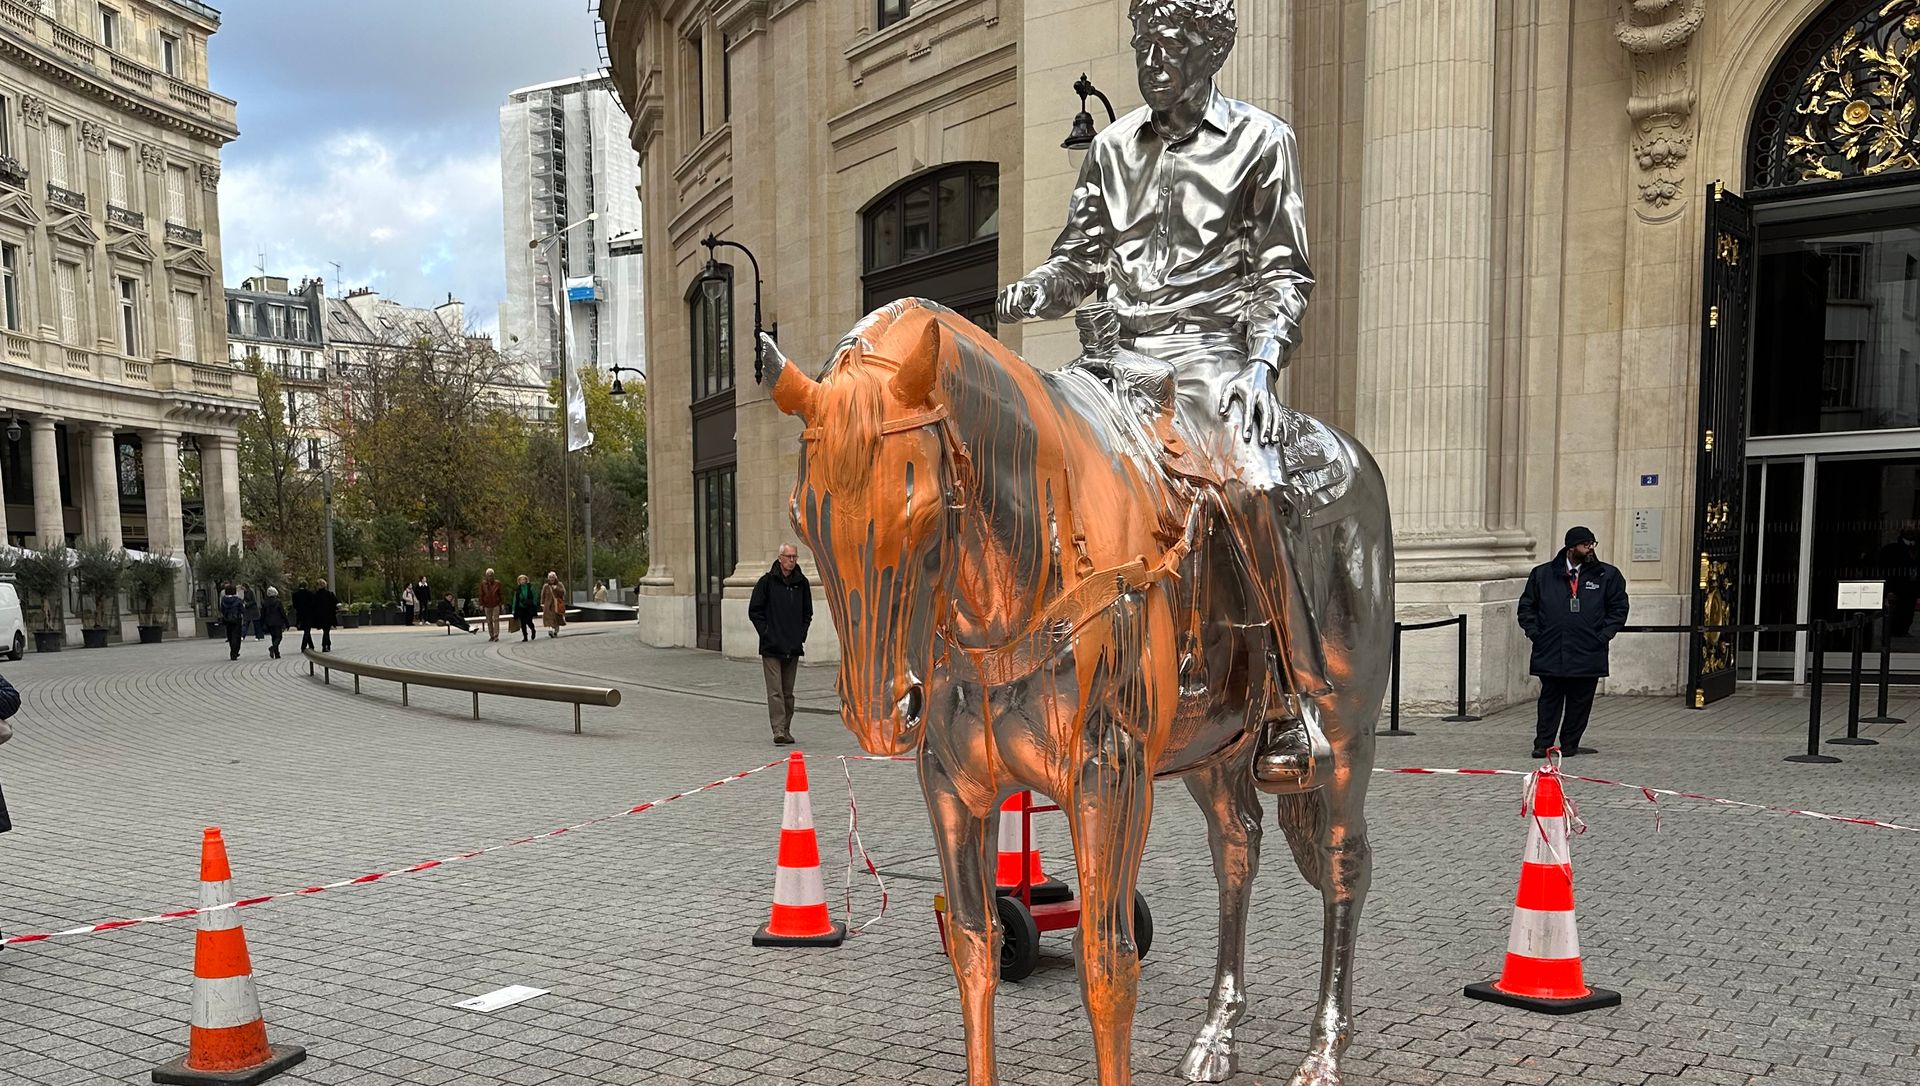 Le cheval argenté « Horse and rider » de Charles Ray couvert d’une peinture orange devant la Bourse de Commerce – Pinault Collection, à Paris. Photo : Philippe Régnier